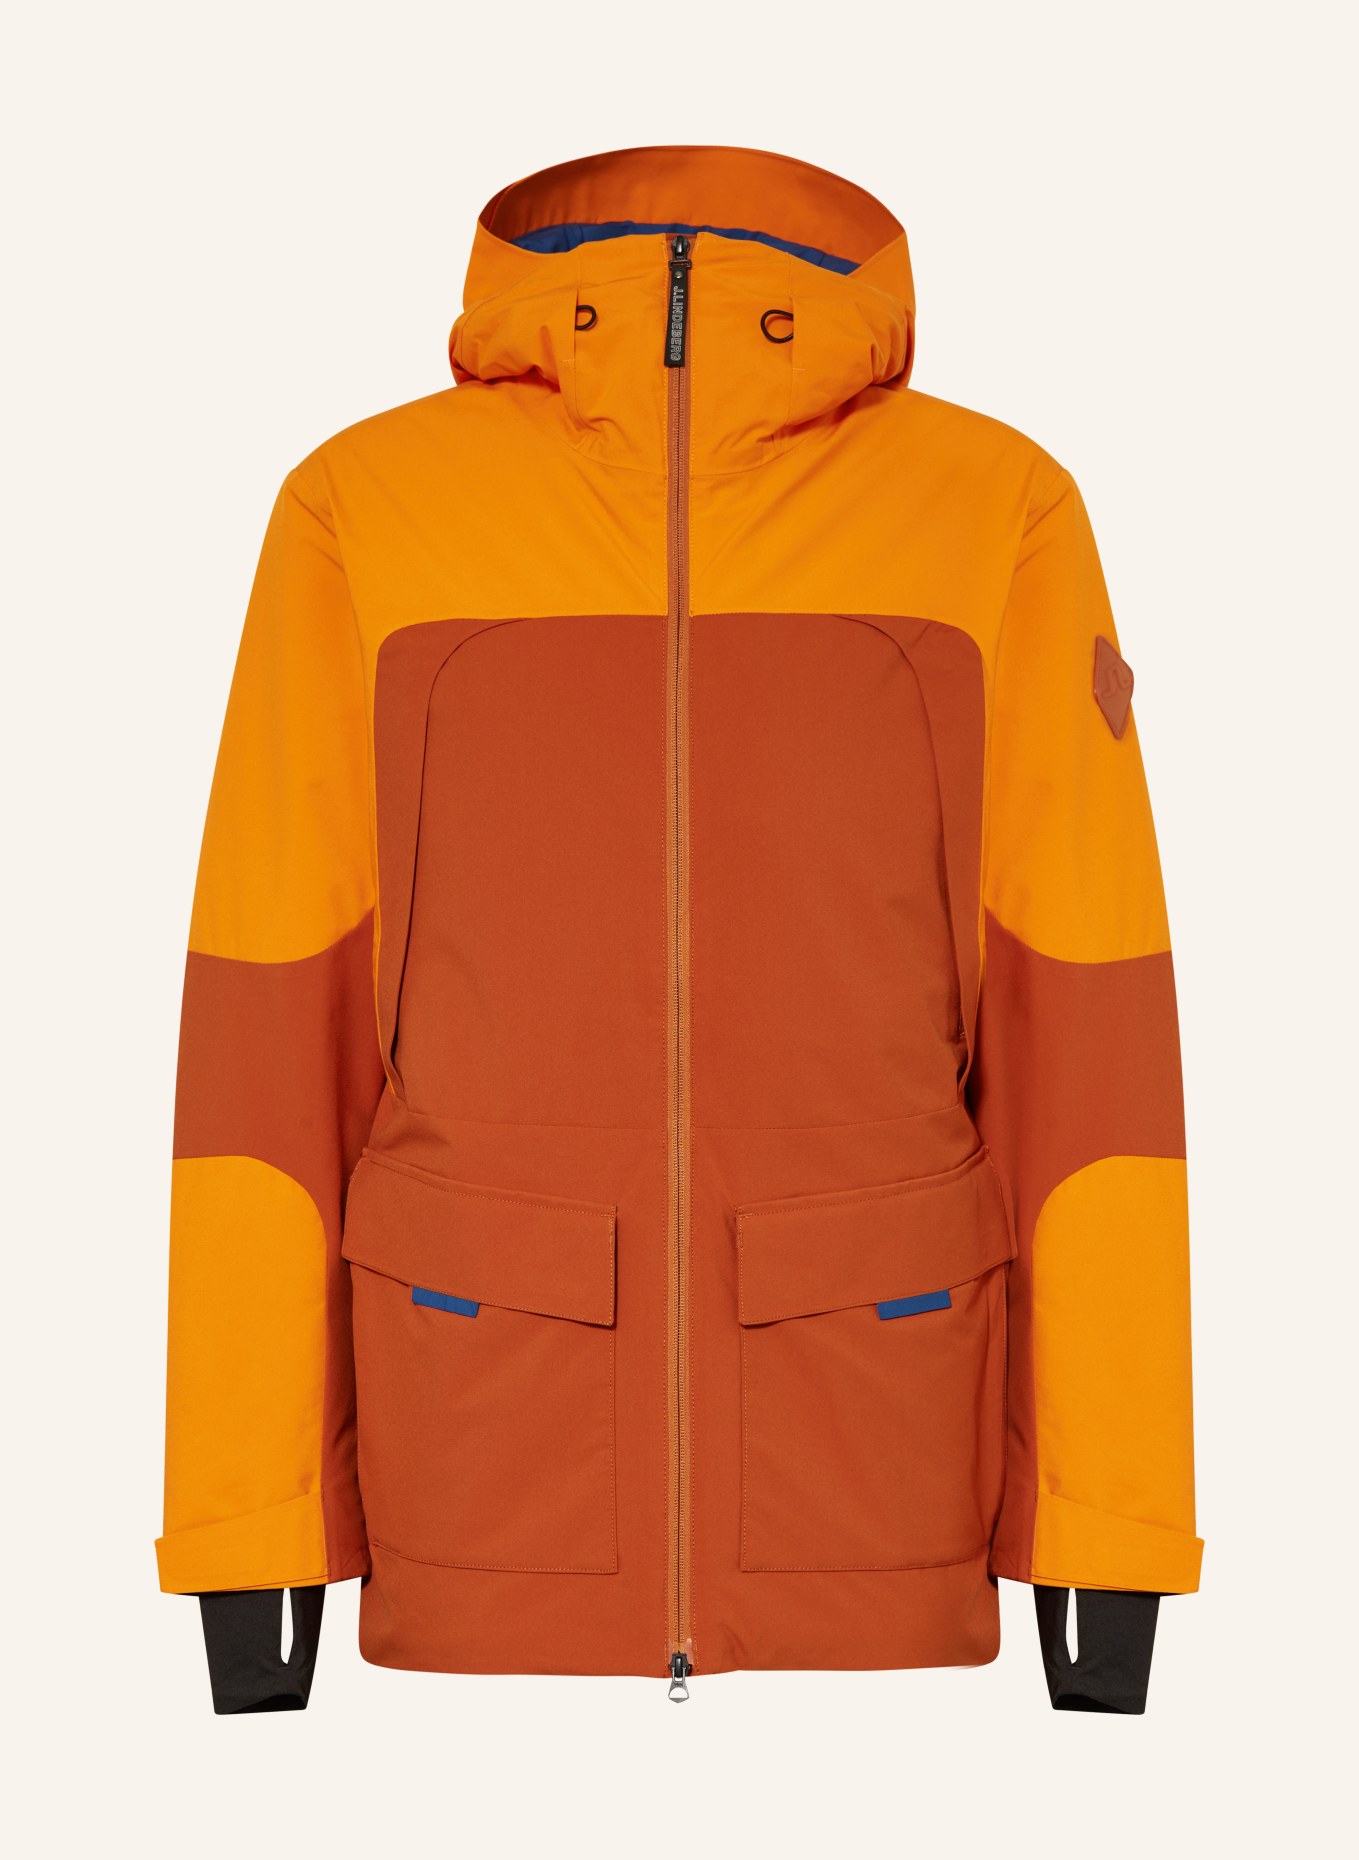 jacket dark orange/ in J.LINDEBERG orange/ blue Ski